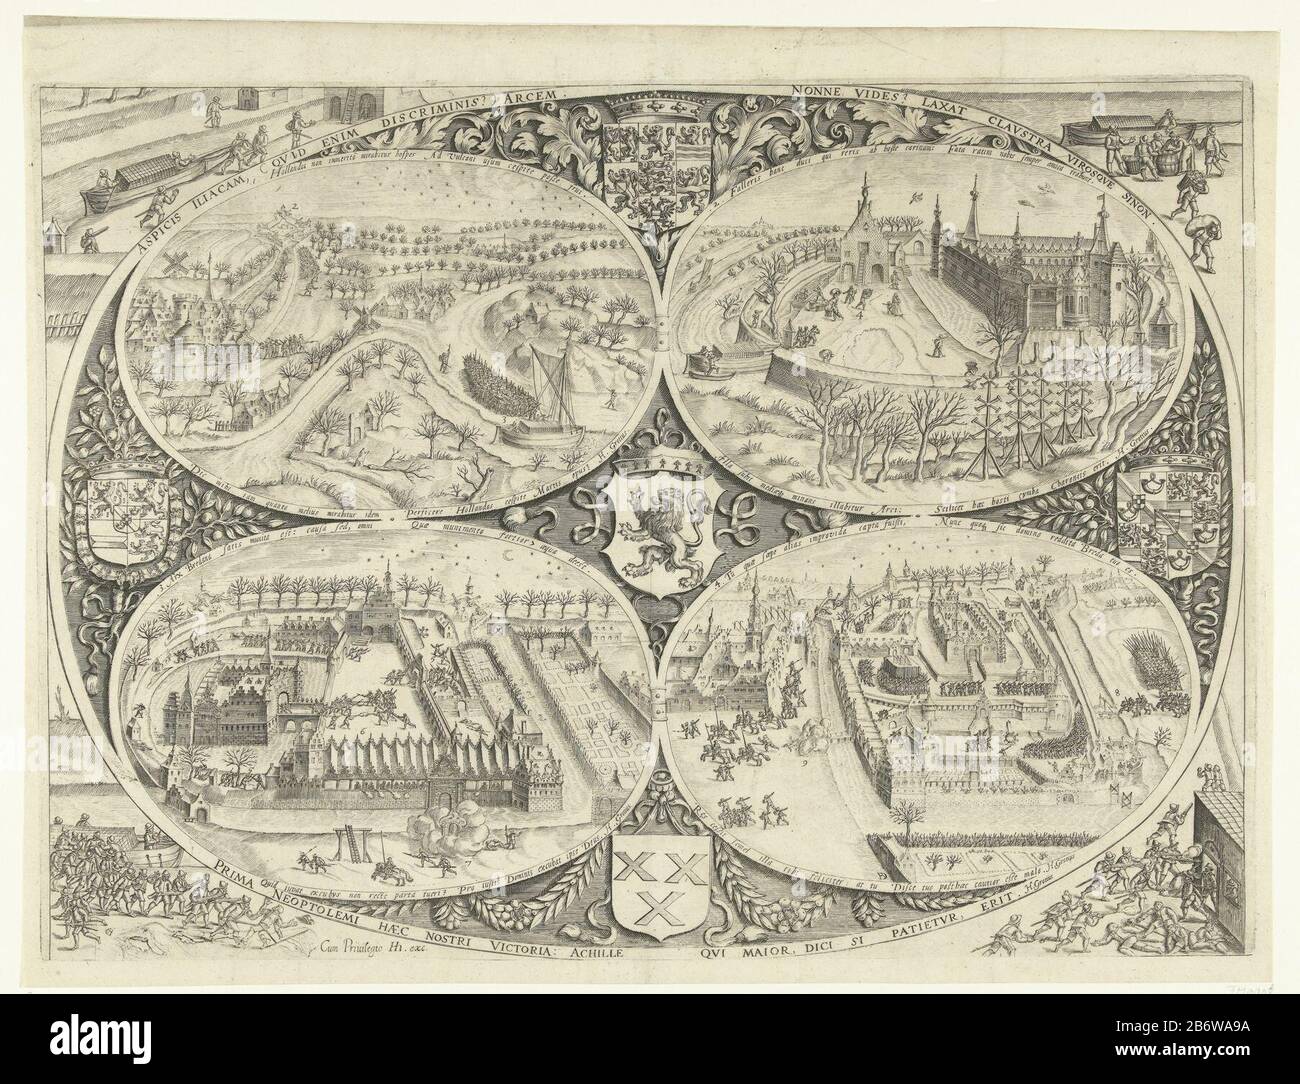 Inname van Breda, 1590 l'ingestion de Breda par l'armée américaine sous Maurice, 4 mars 1590. Présenté en quatre ovales numérotés. En haut à gauche (1): Embarquement turfschip; en haut à droite (2): Il est retiré turfschip le château; à gauche (3): Les troupes sortent, et viennent avec les occupants; à droite (4): Arrivée des troupes de Maurice et fuite des envahisseurs. Autour d'ici, les bras des sept provinces de Guillaume d'Orange et de Maurice, le Duché de Brabant et la ville de Breda. Avec inscriptions à Latijn. Fabricant : Printmaker: Bartholomeus Willemsz. Doendo (propriété listée) écrivain: HU Banque D'Images